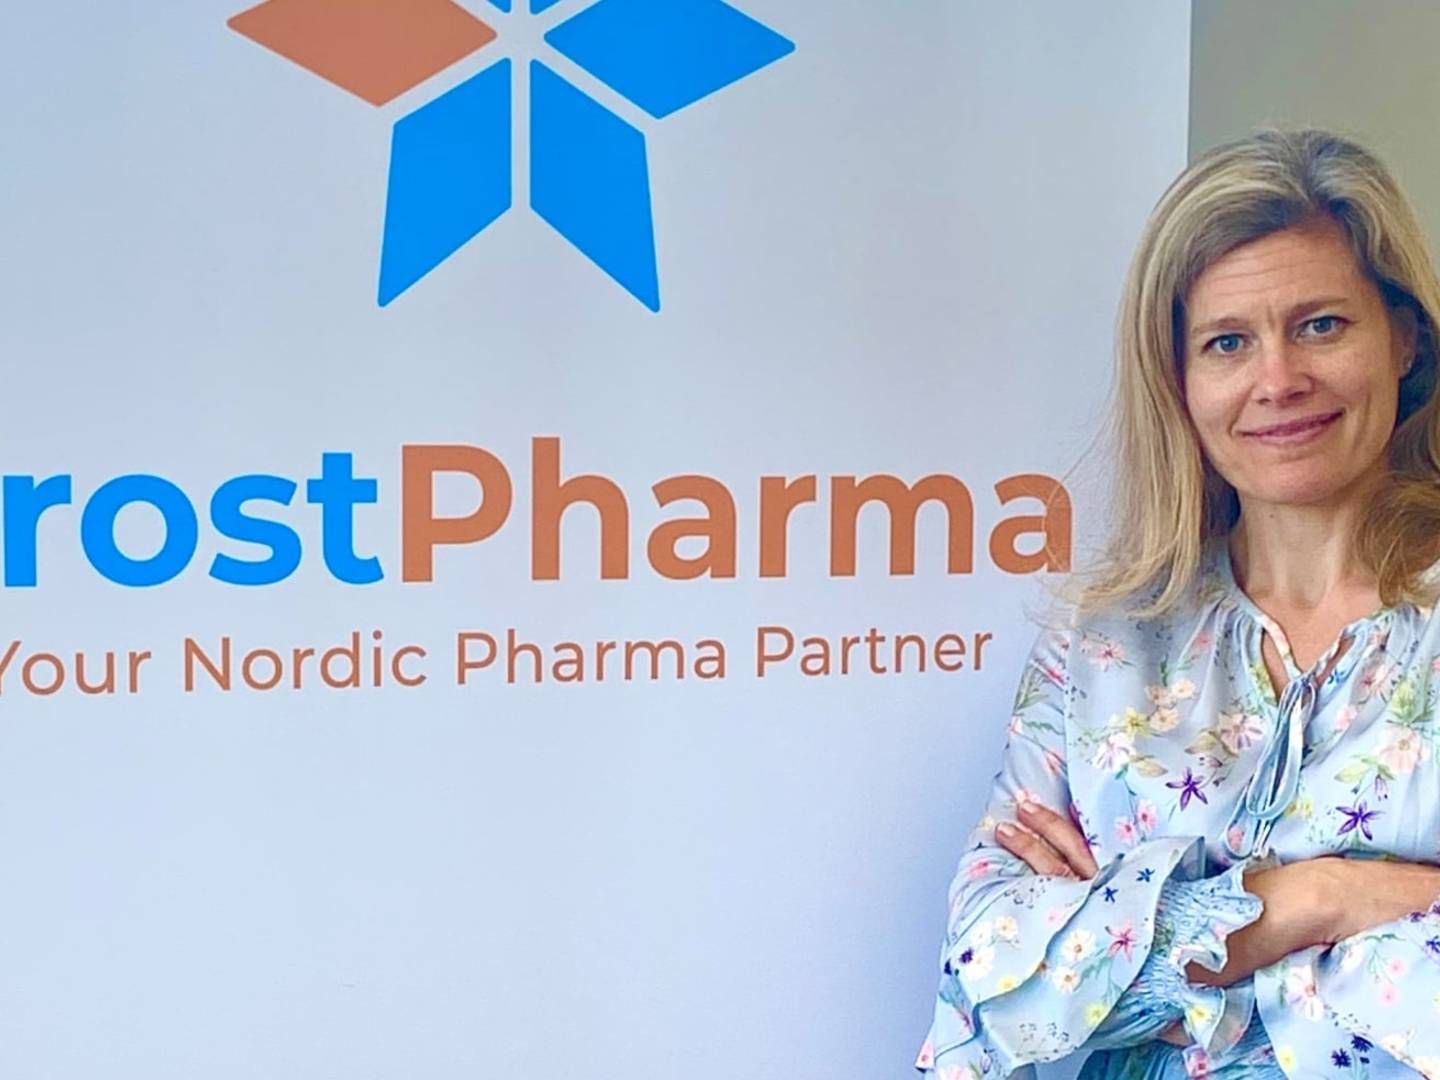 Cecilia Bröms-Thell, der har en lang karriere inden for life science bag sig - blandt andet som adm. direktør for biotekselskabet Frost Pharma - er medstifter af det nye svenske netværk for kvindelige life science-ledere, Vilda. | Foto: Frost Pharma